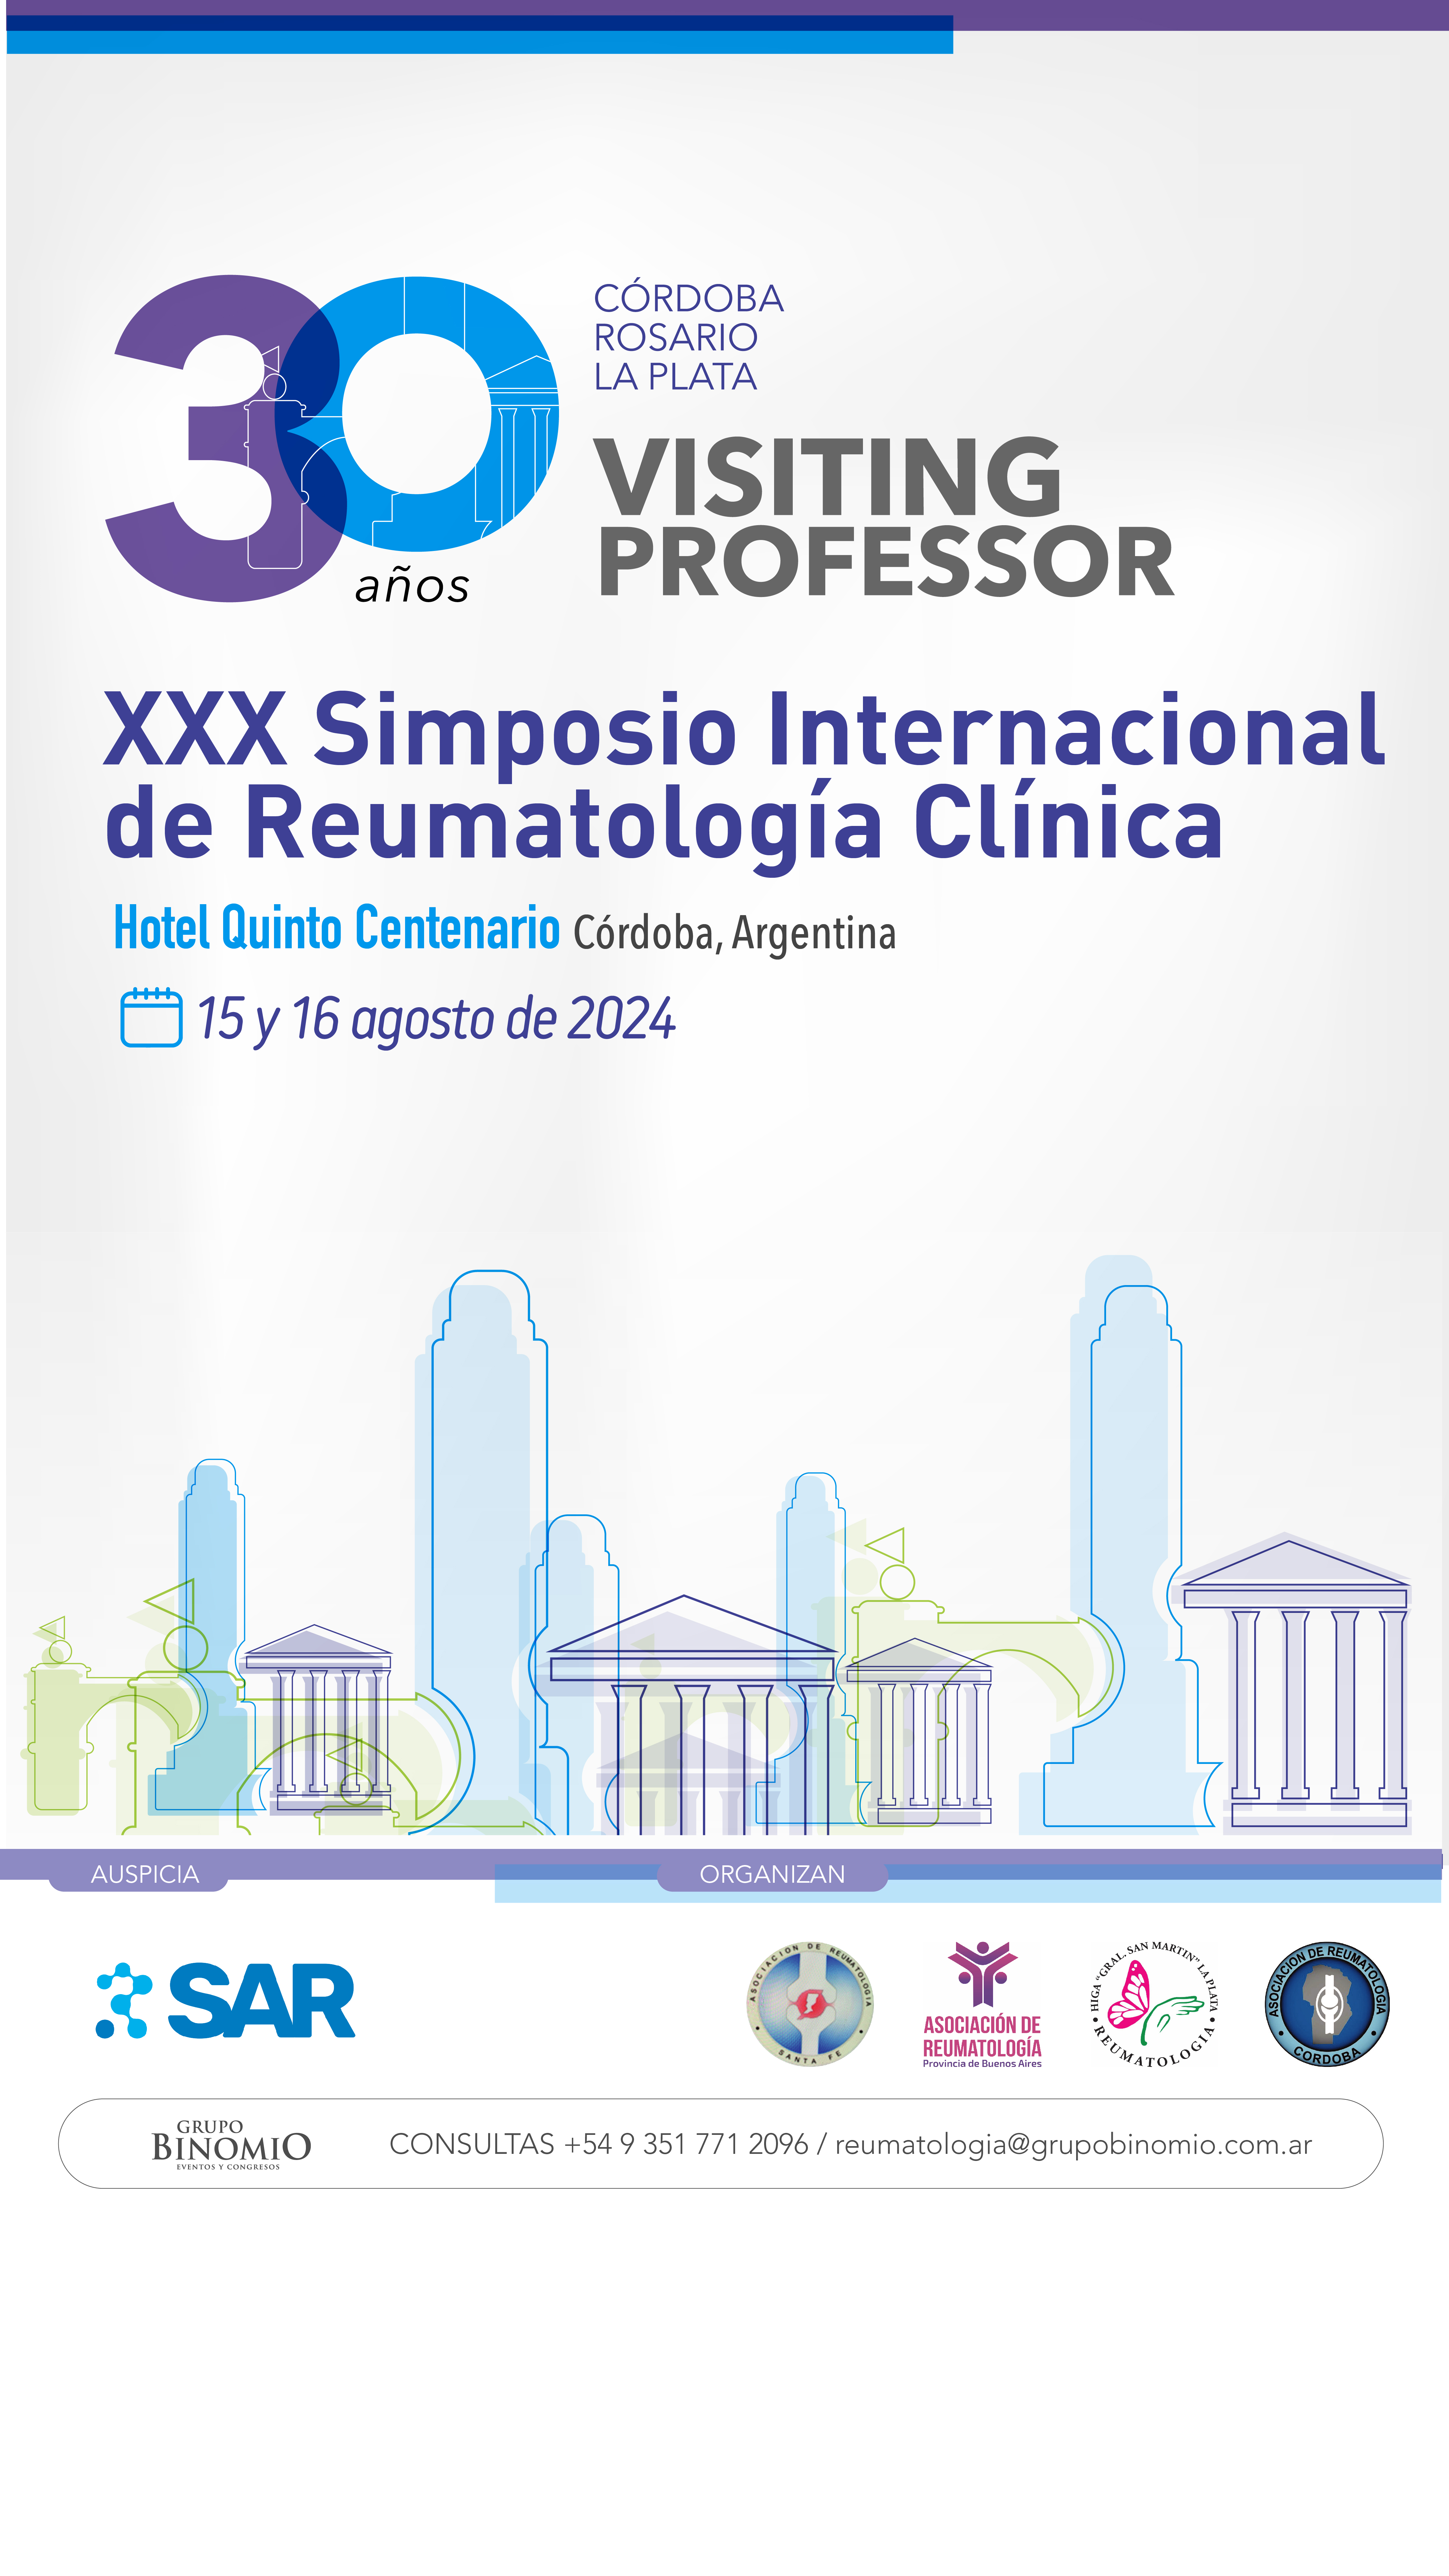 XXX Simposio Internacional de Reumatología Clínica